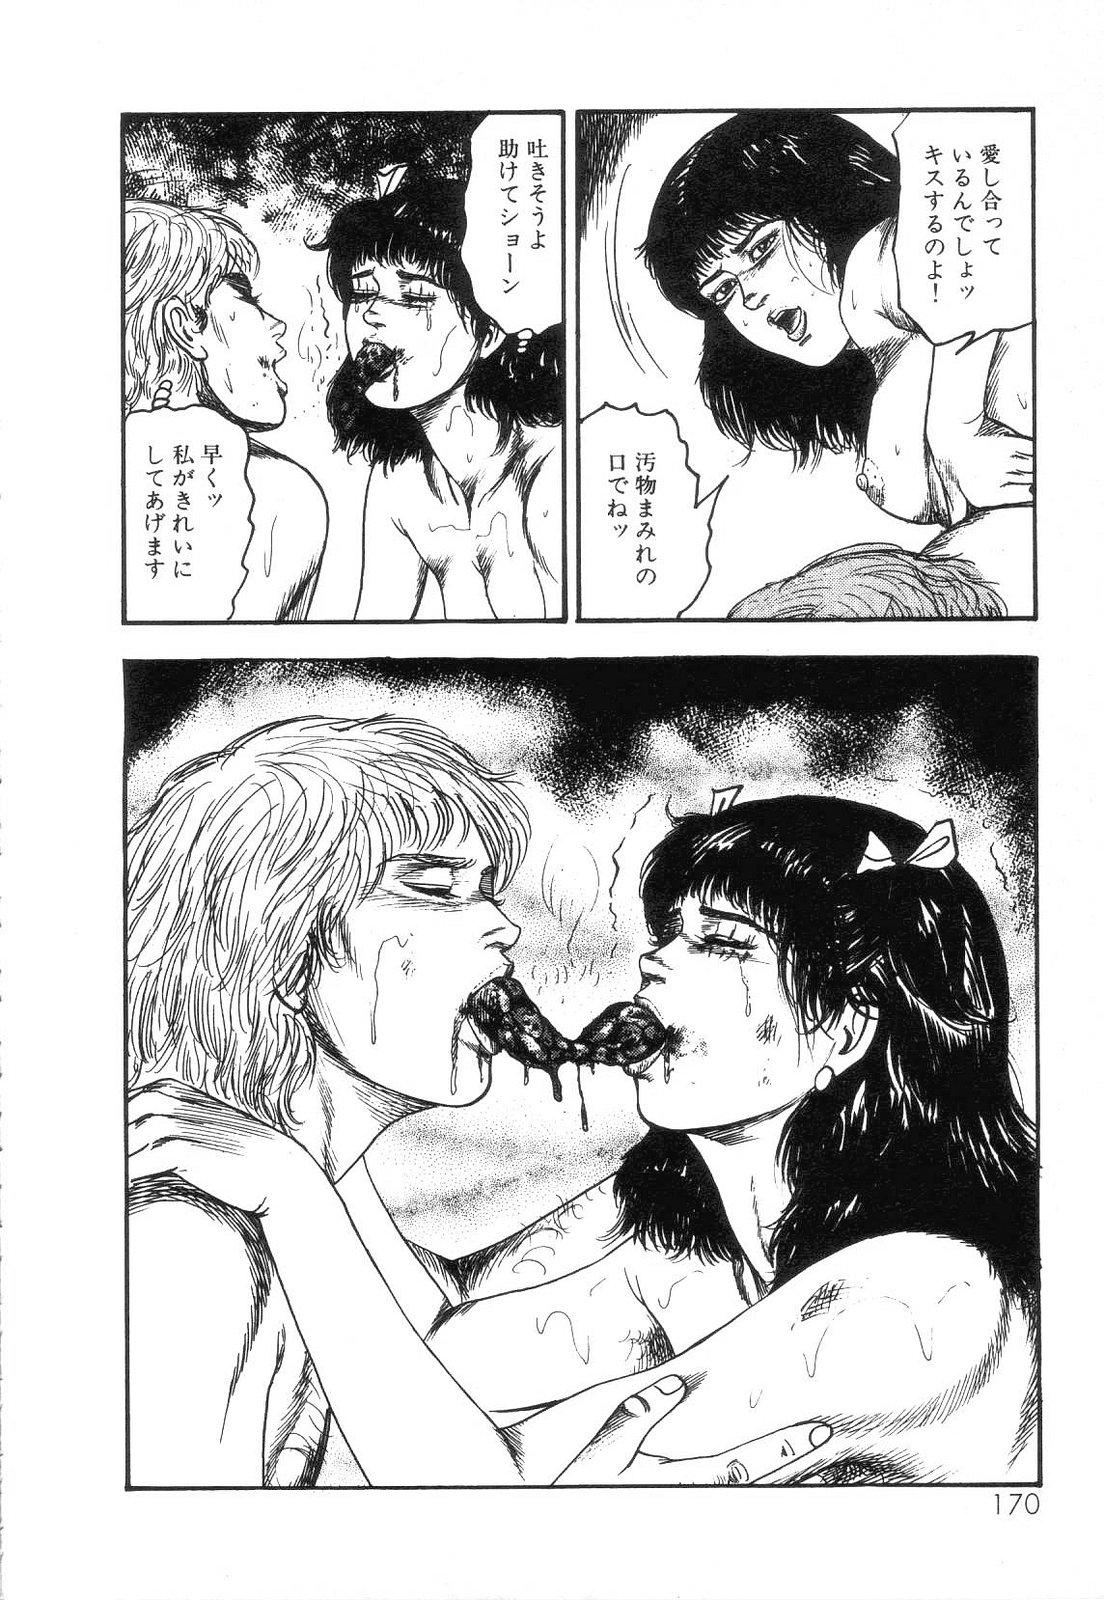 Shiro no Mokushiroku Vol. 4 - Bichiku Karen no Shou 171